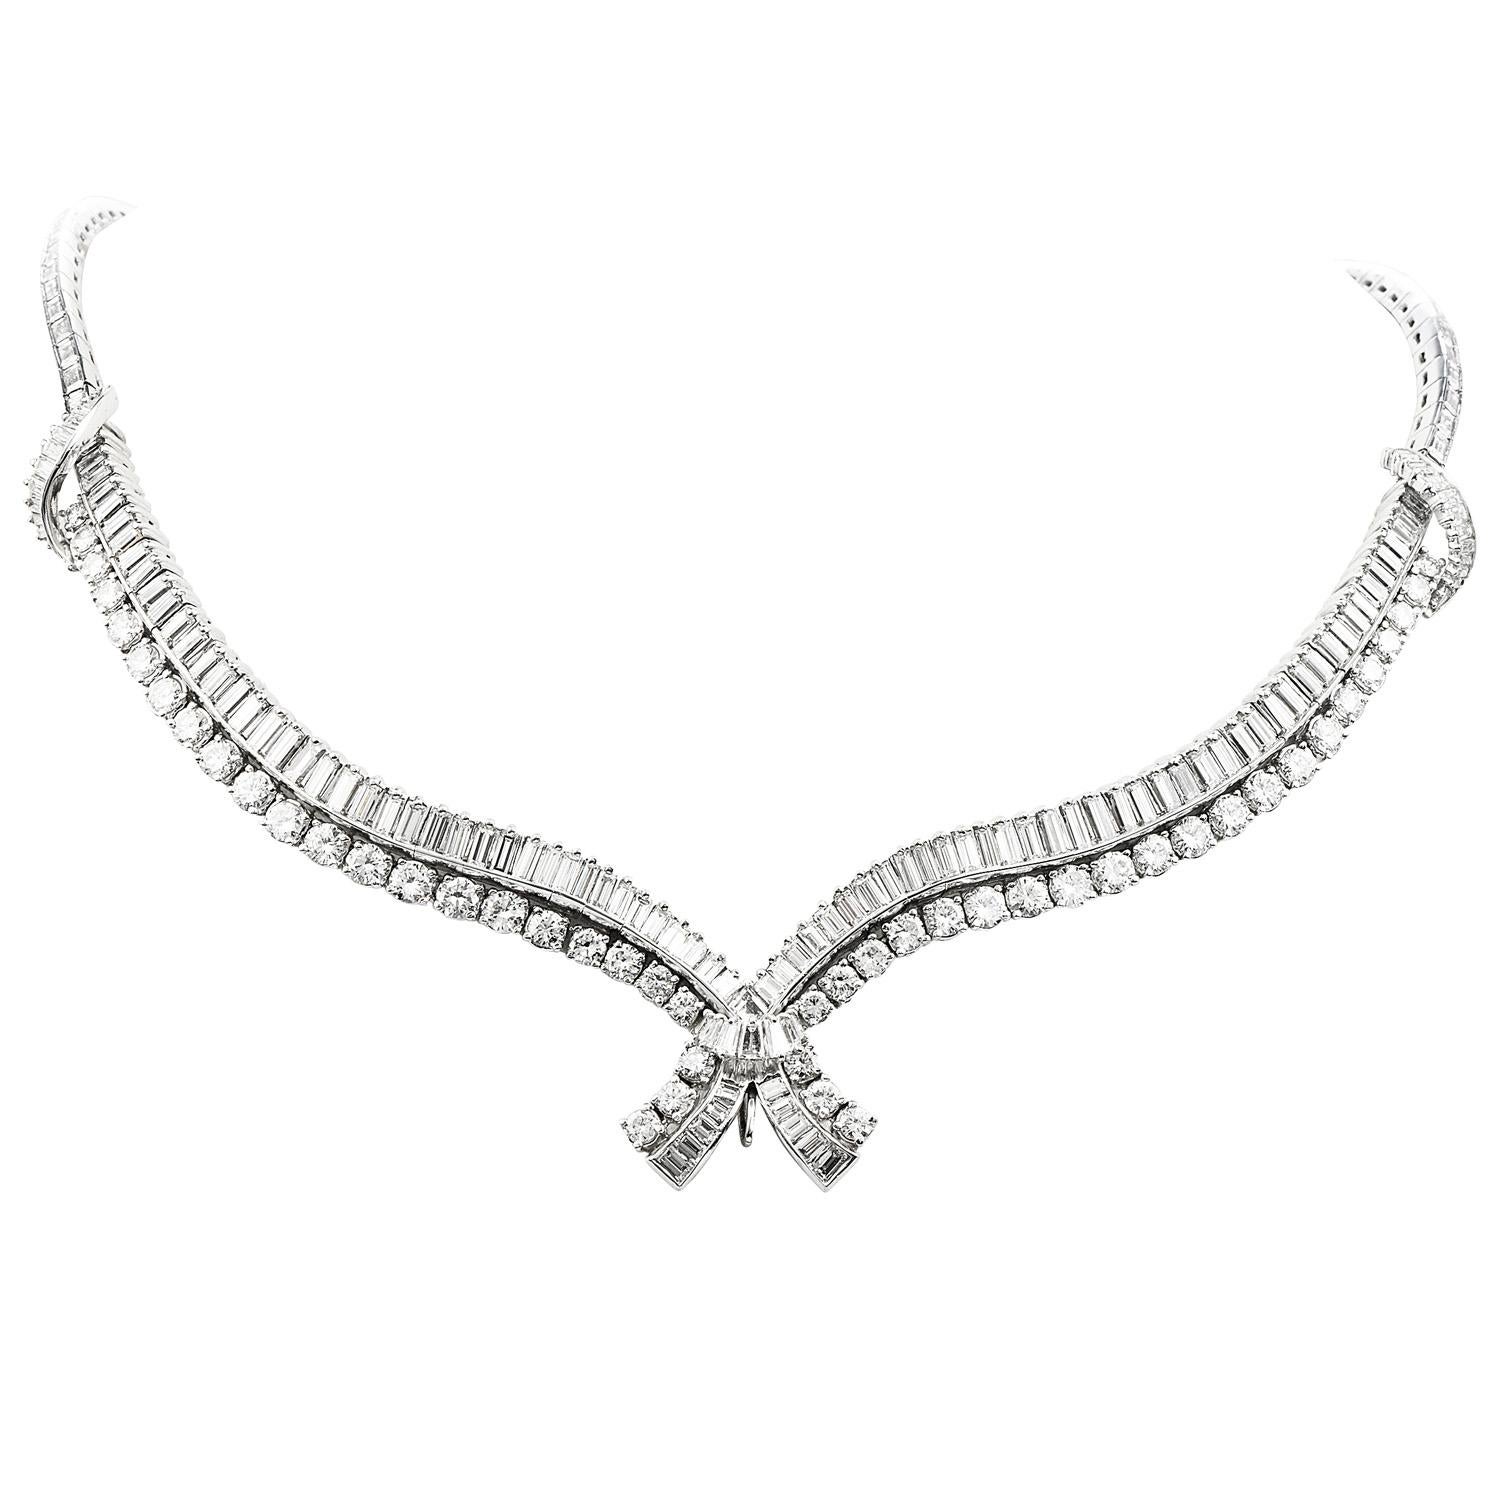 Ziehen Sie die Blicke auf sich mit dieser atemberaubenden Südseeperlen-Diamanten-Platin-Halskette mit einem Gewicht von ca. 88,2 Gramm.

Fachmännisch gefertigt aus massivem, luxuriösem Platin,  Das Stück besteht aus  154 schillernde echte große